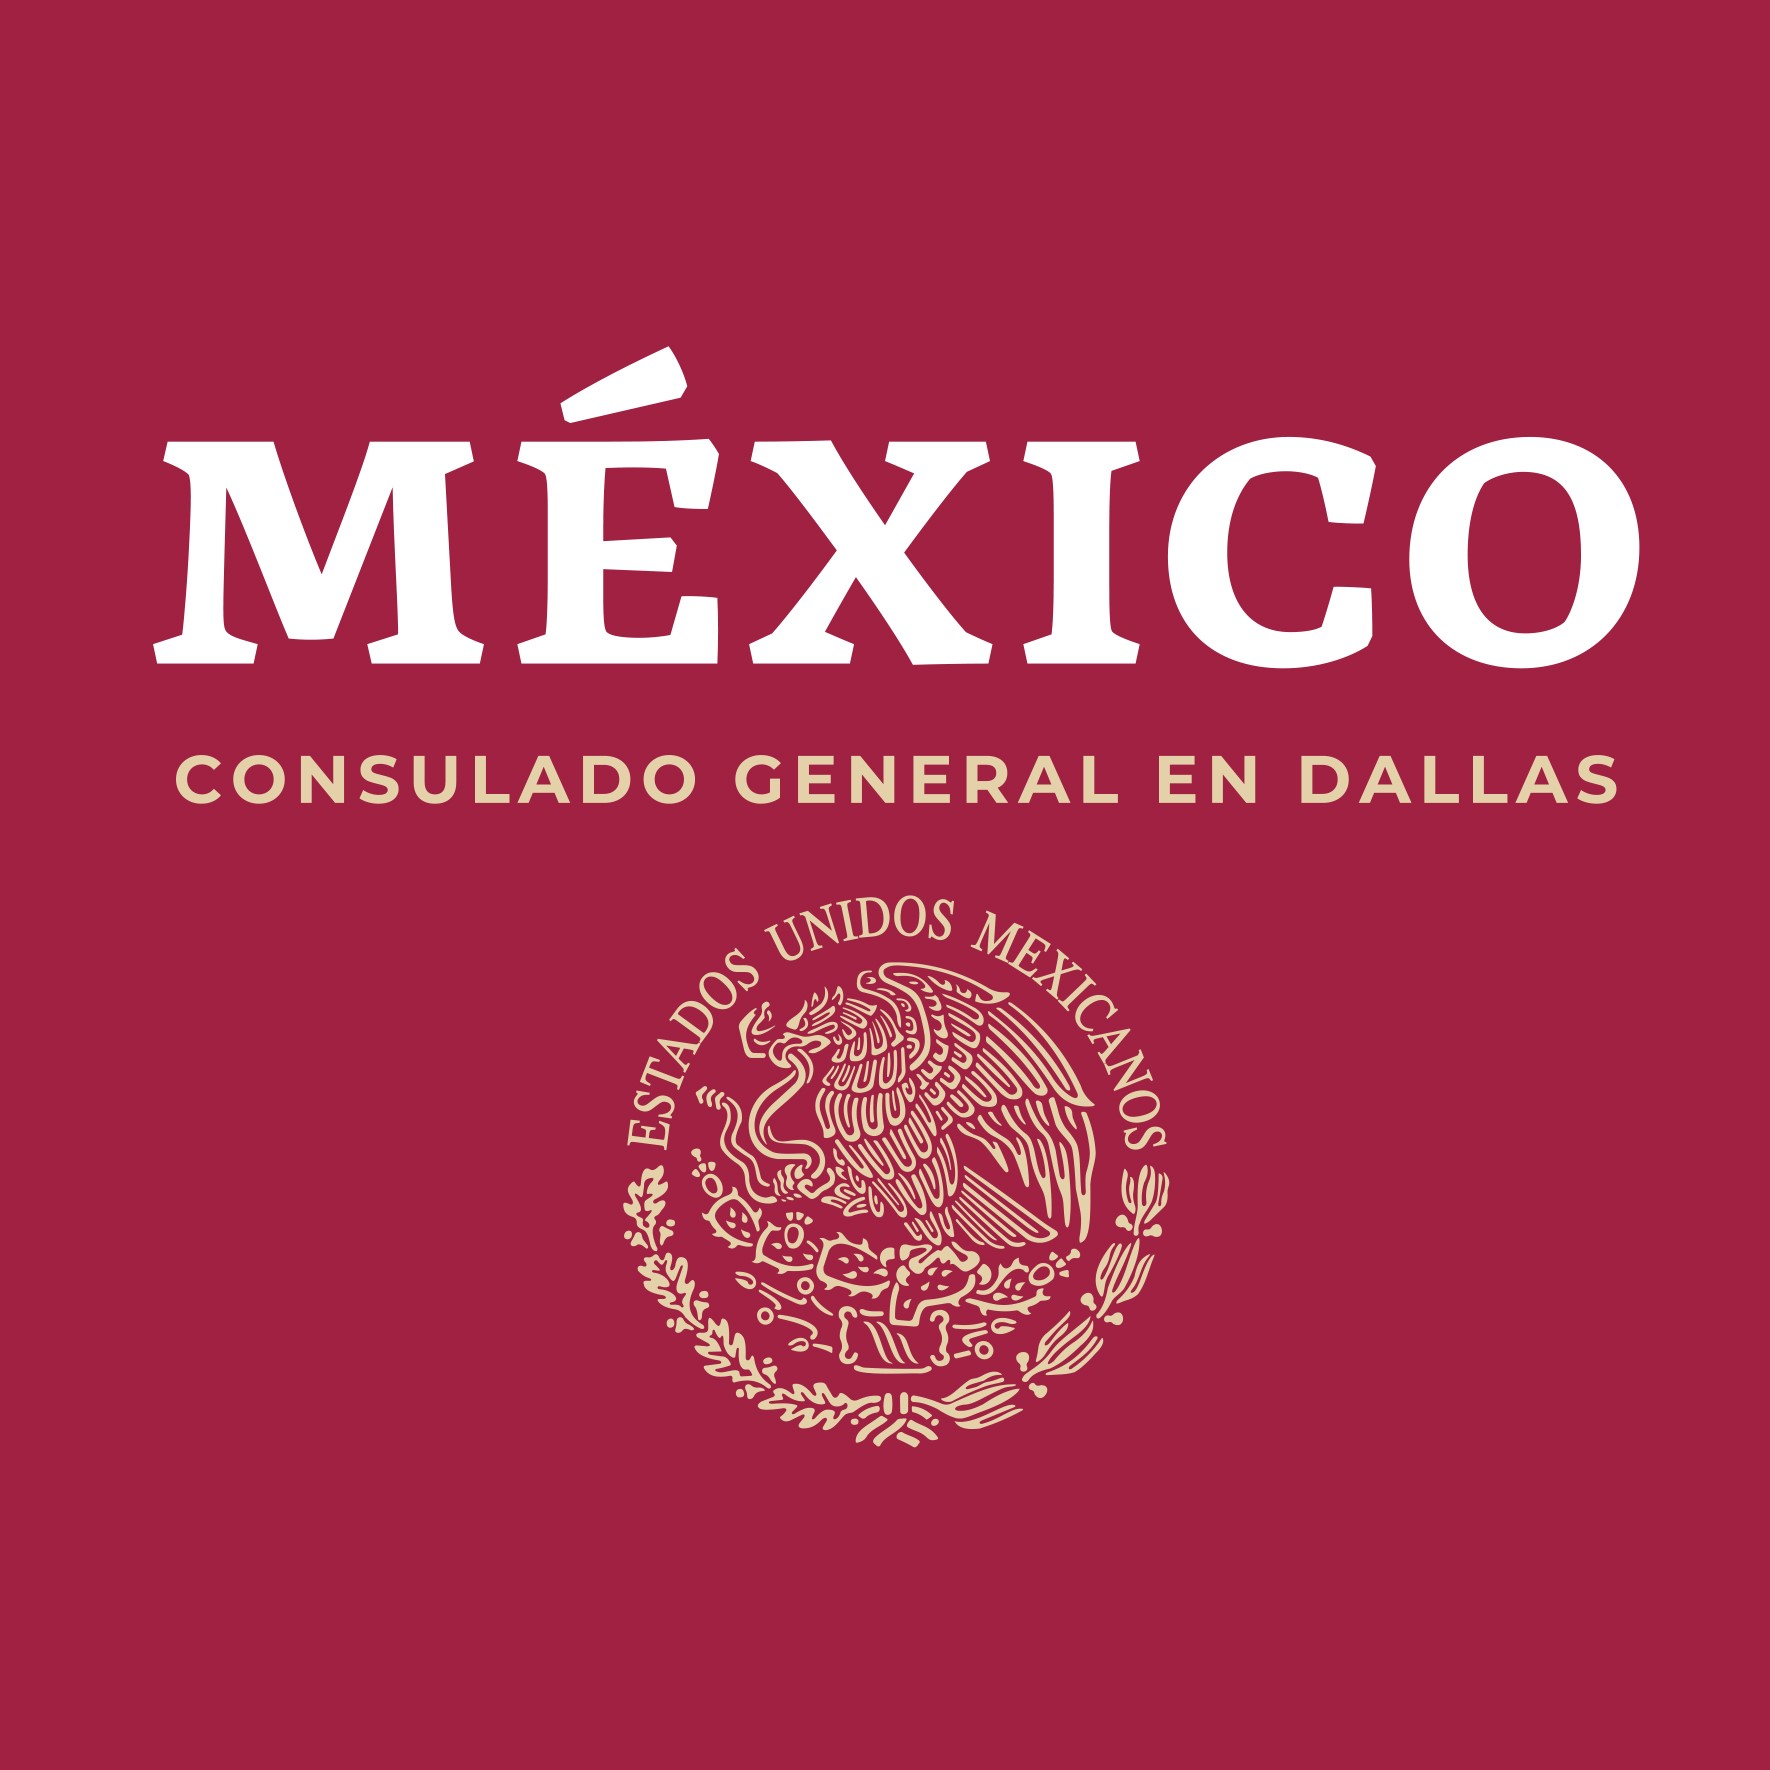 Mexican Consulate logo